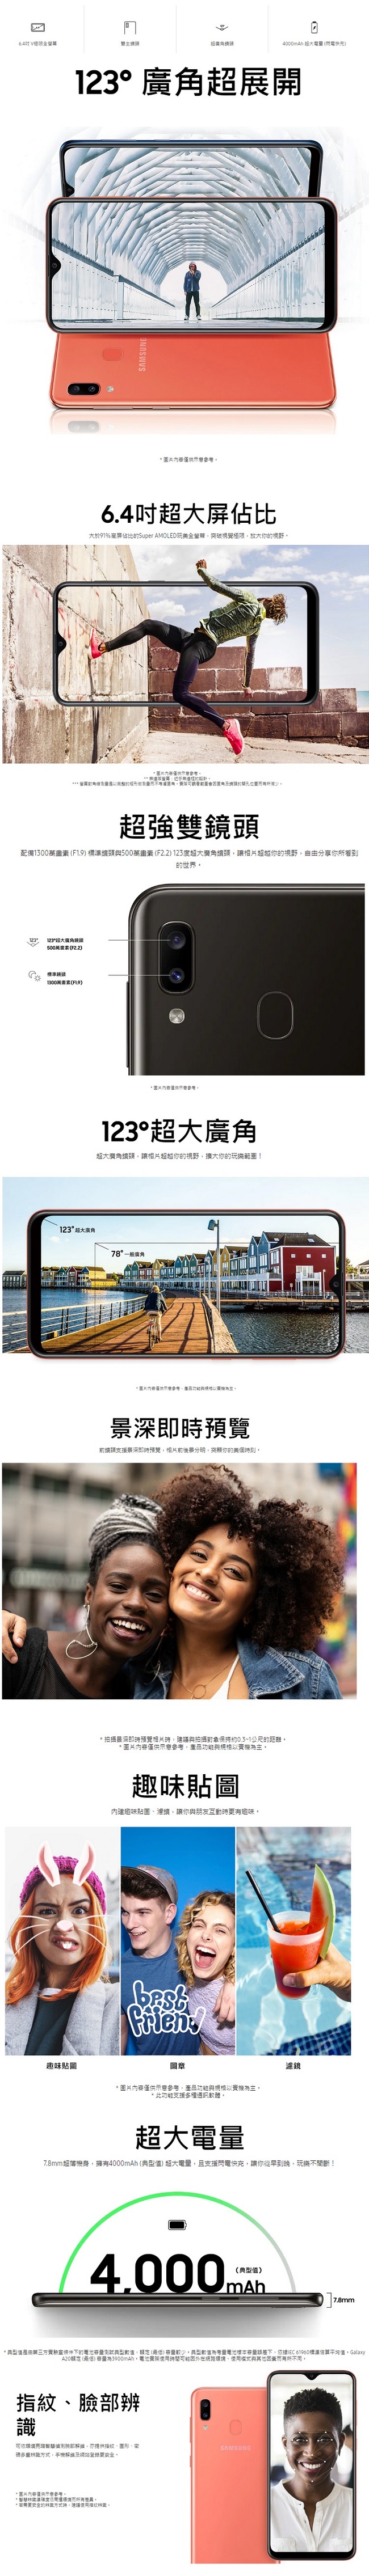 Samsung GALAXY A20 (3GB/32G)6.4 吋八核心手機